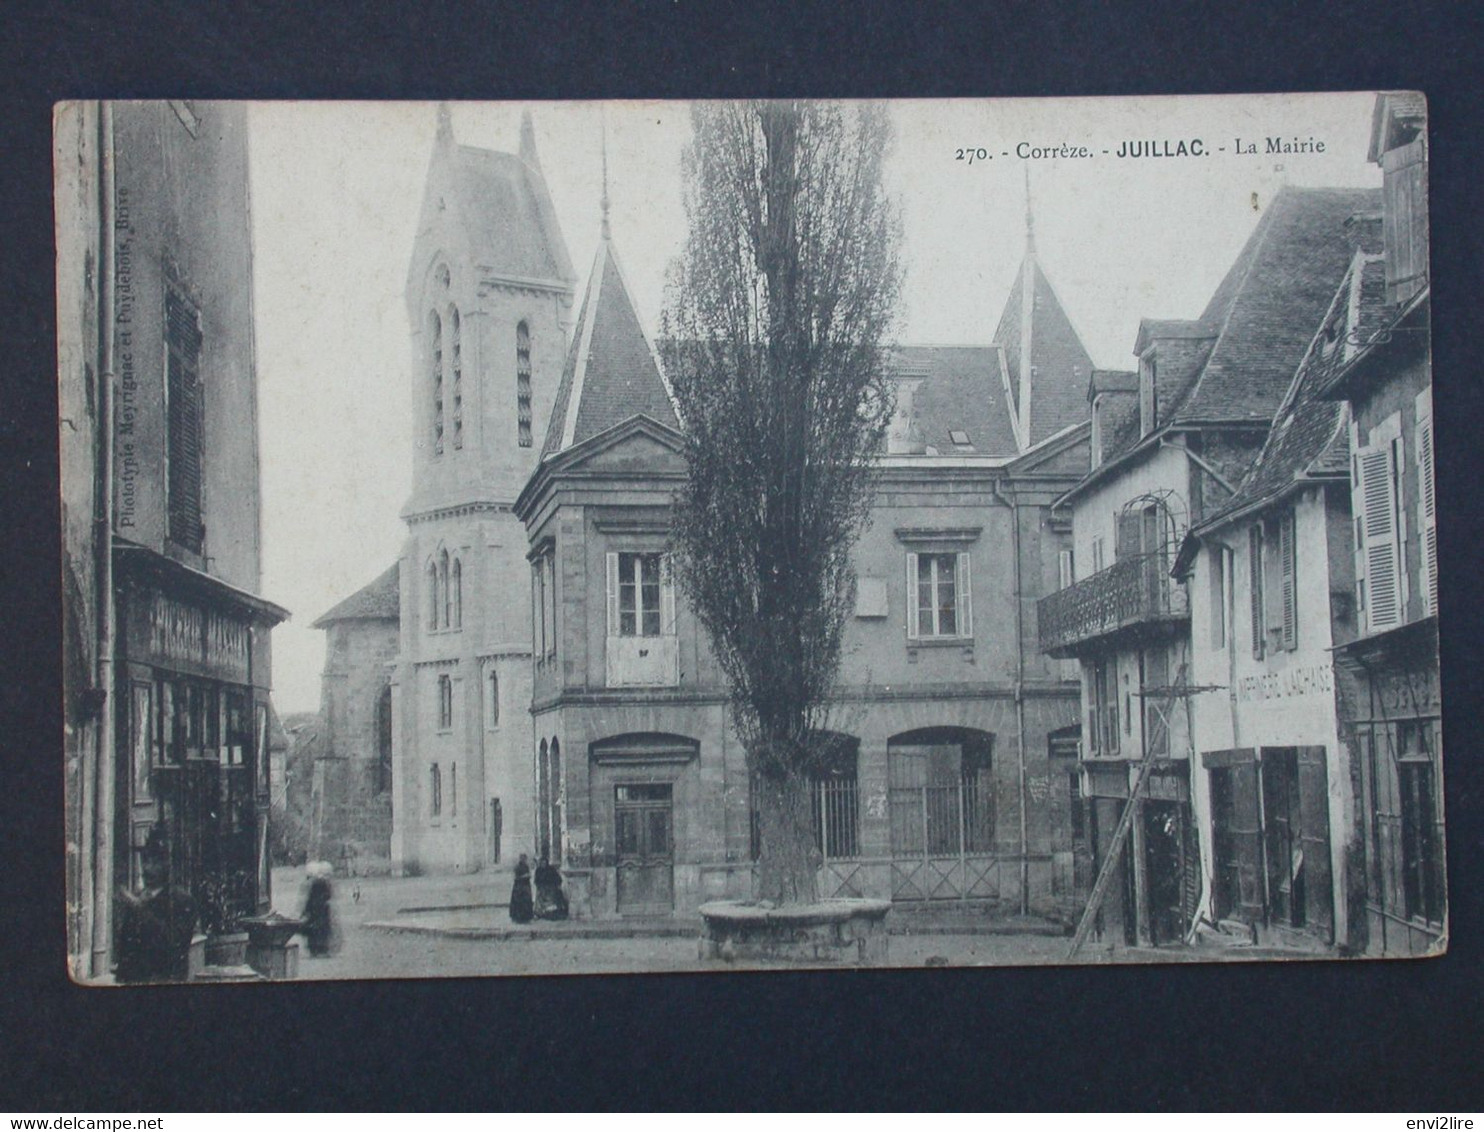 Ref6061 CPA Juillac (Limousin) - La Mairie, Epicerie, Imprimerie Lachaise - Phototypie Mérignac Et Puydebois N° 270 - Juillac